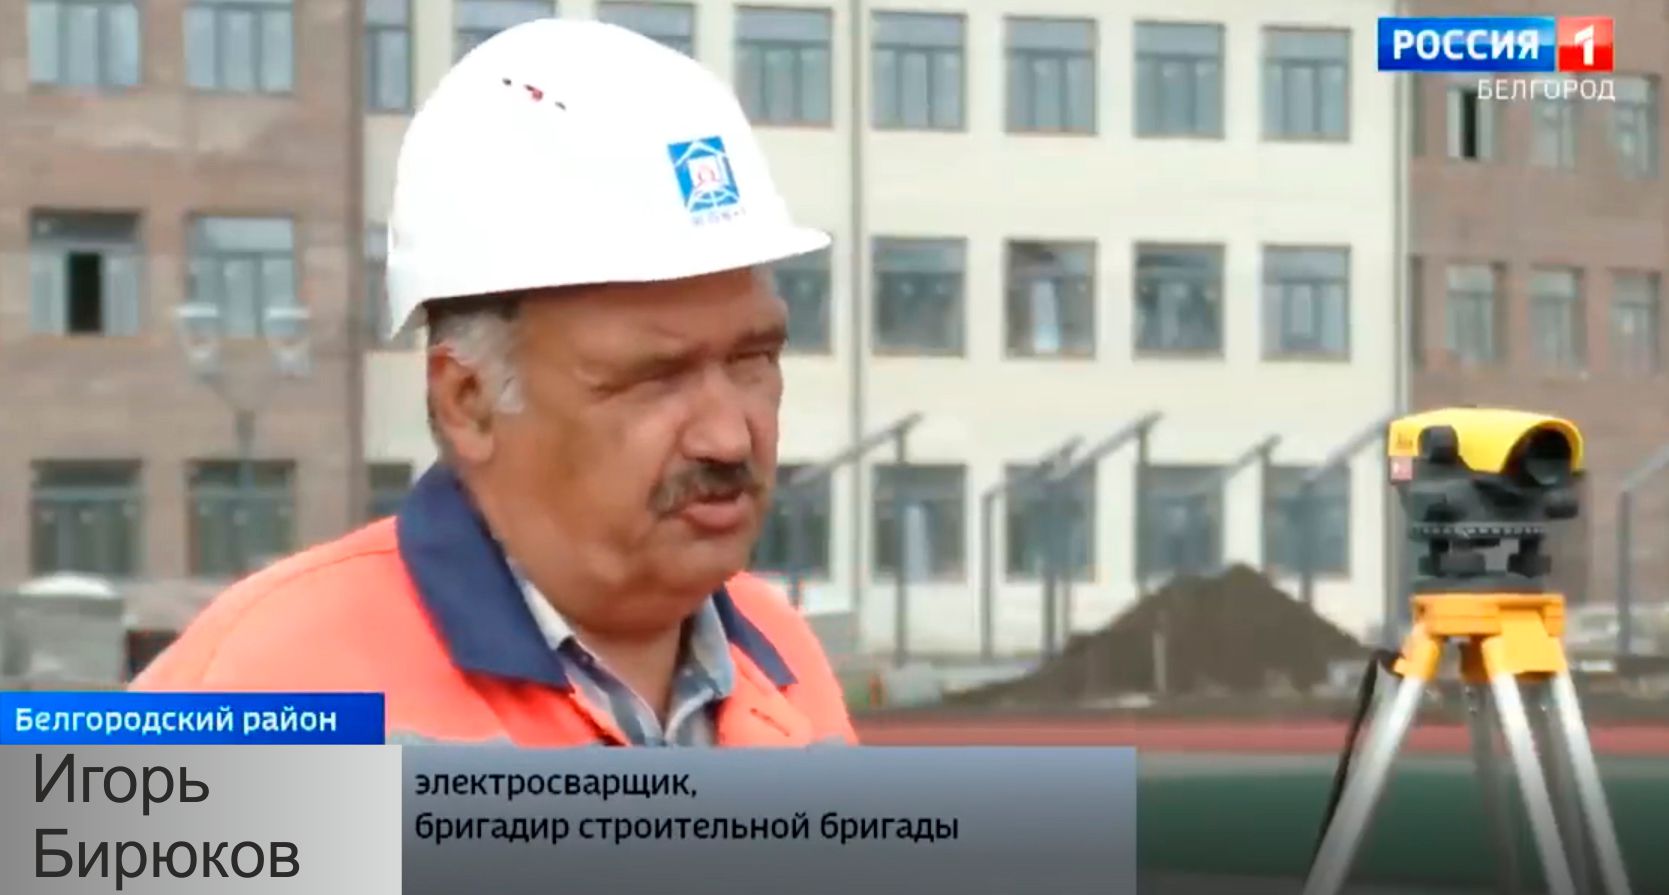 Игорь Бирюков – строитель с 35-летним стажем